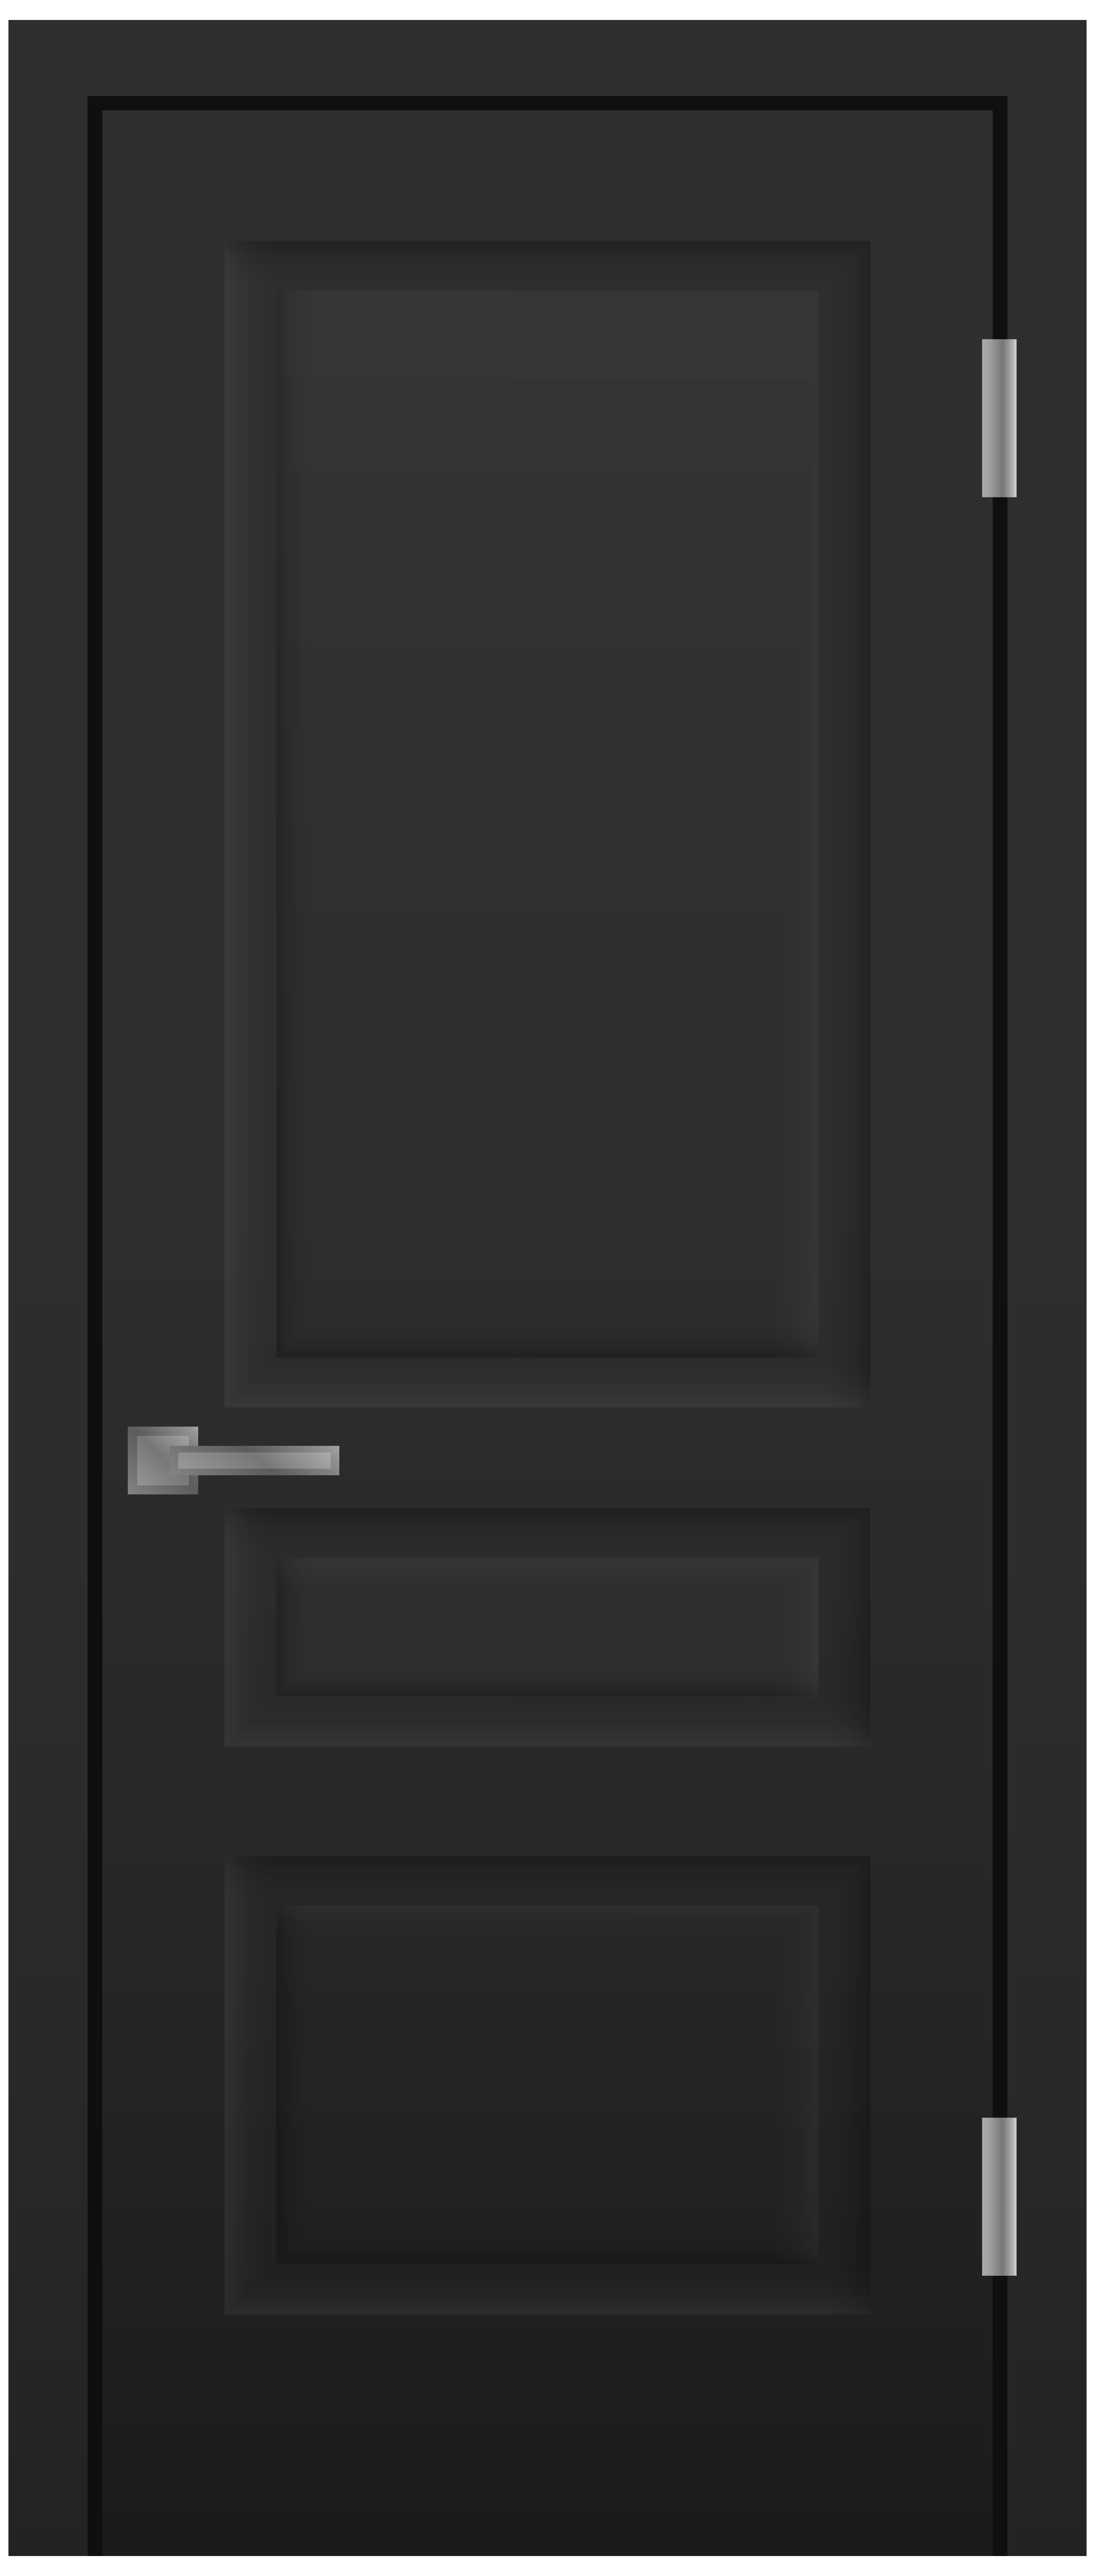 Door Black PNG Clip Art.